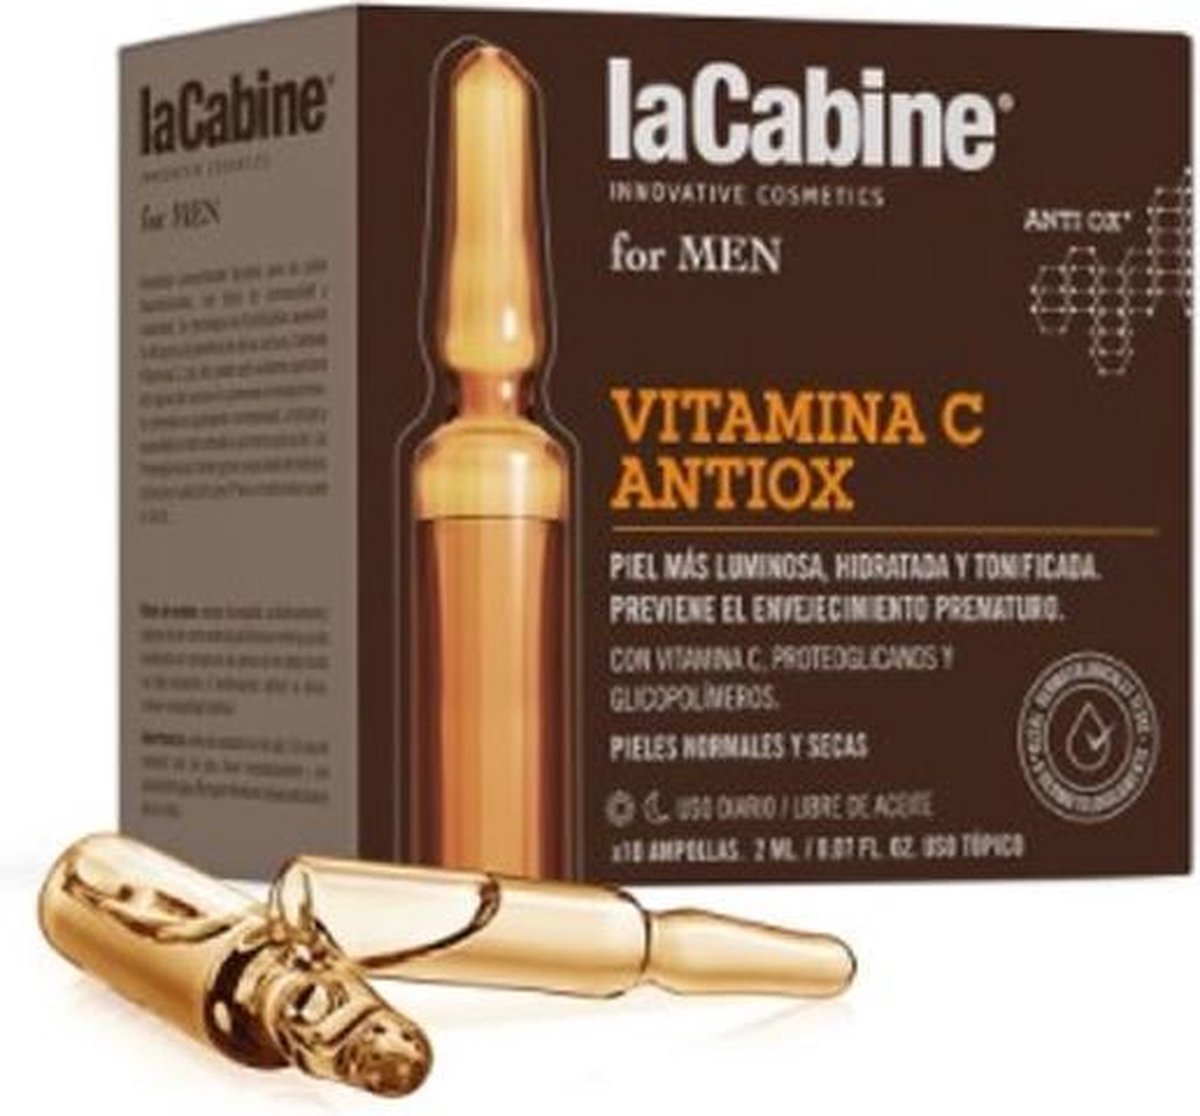 La Cabine La Cabine For Men Ampollas Vitamina C Antiox 10 X 2 Ml